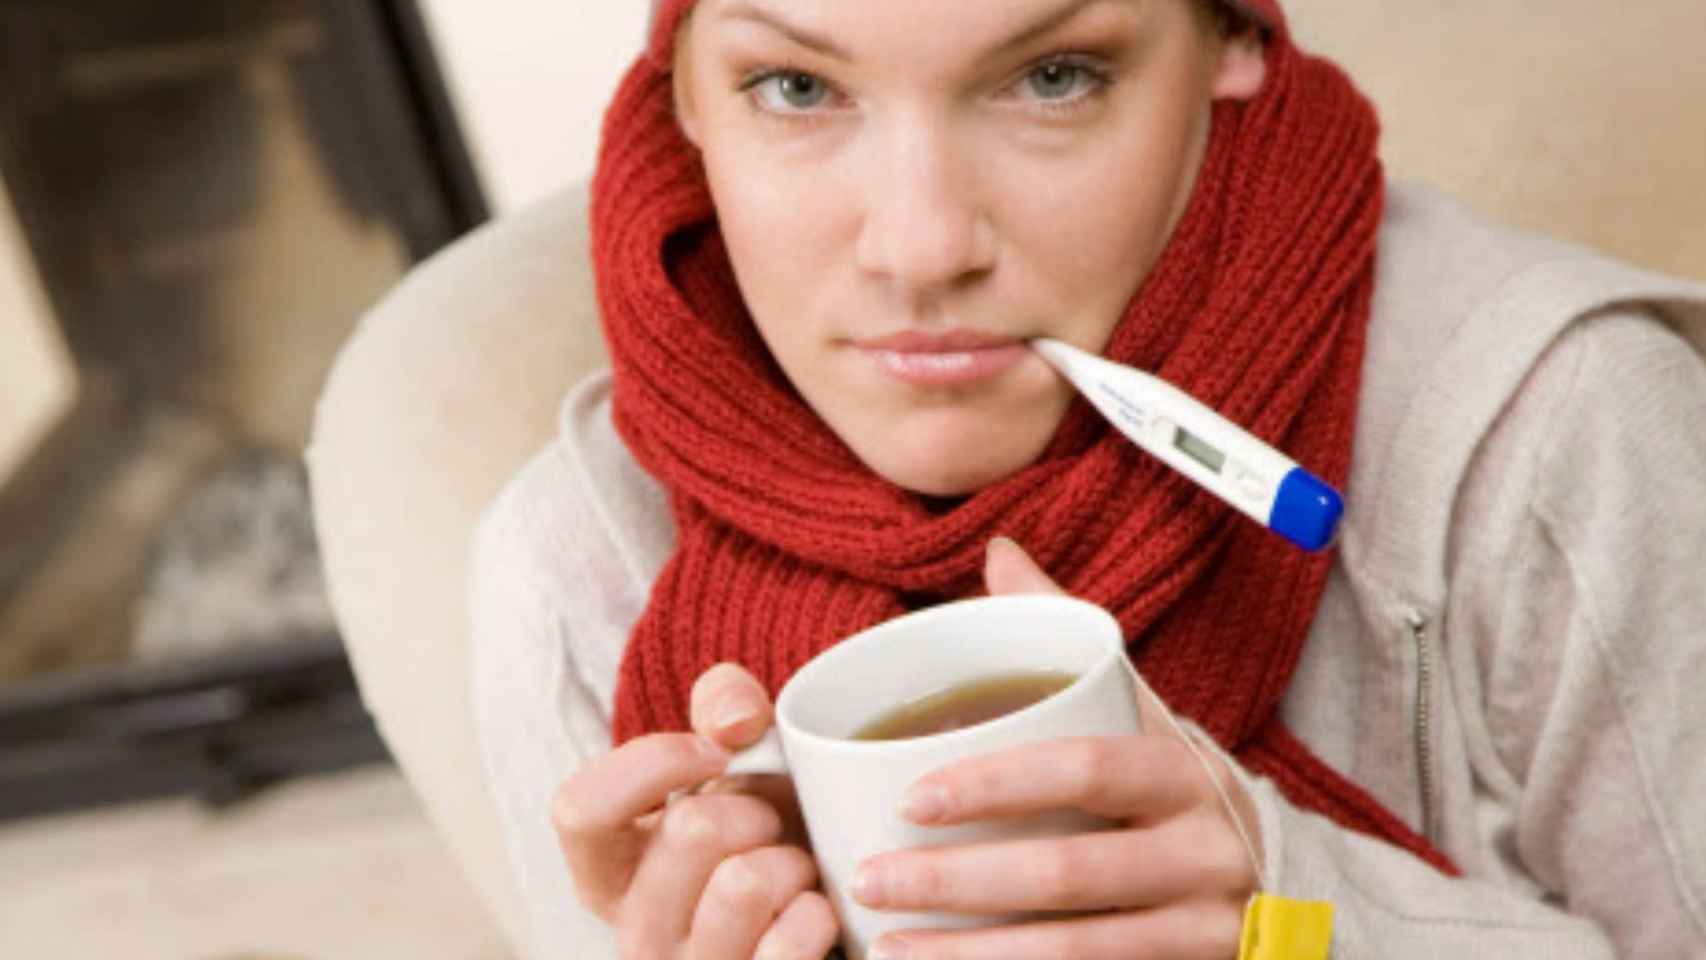 Infusión de manzanilla para combatir el resfriado: así se puede